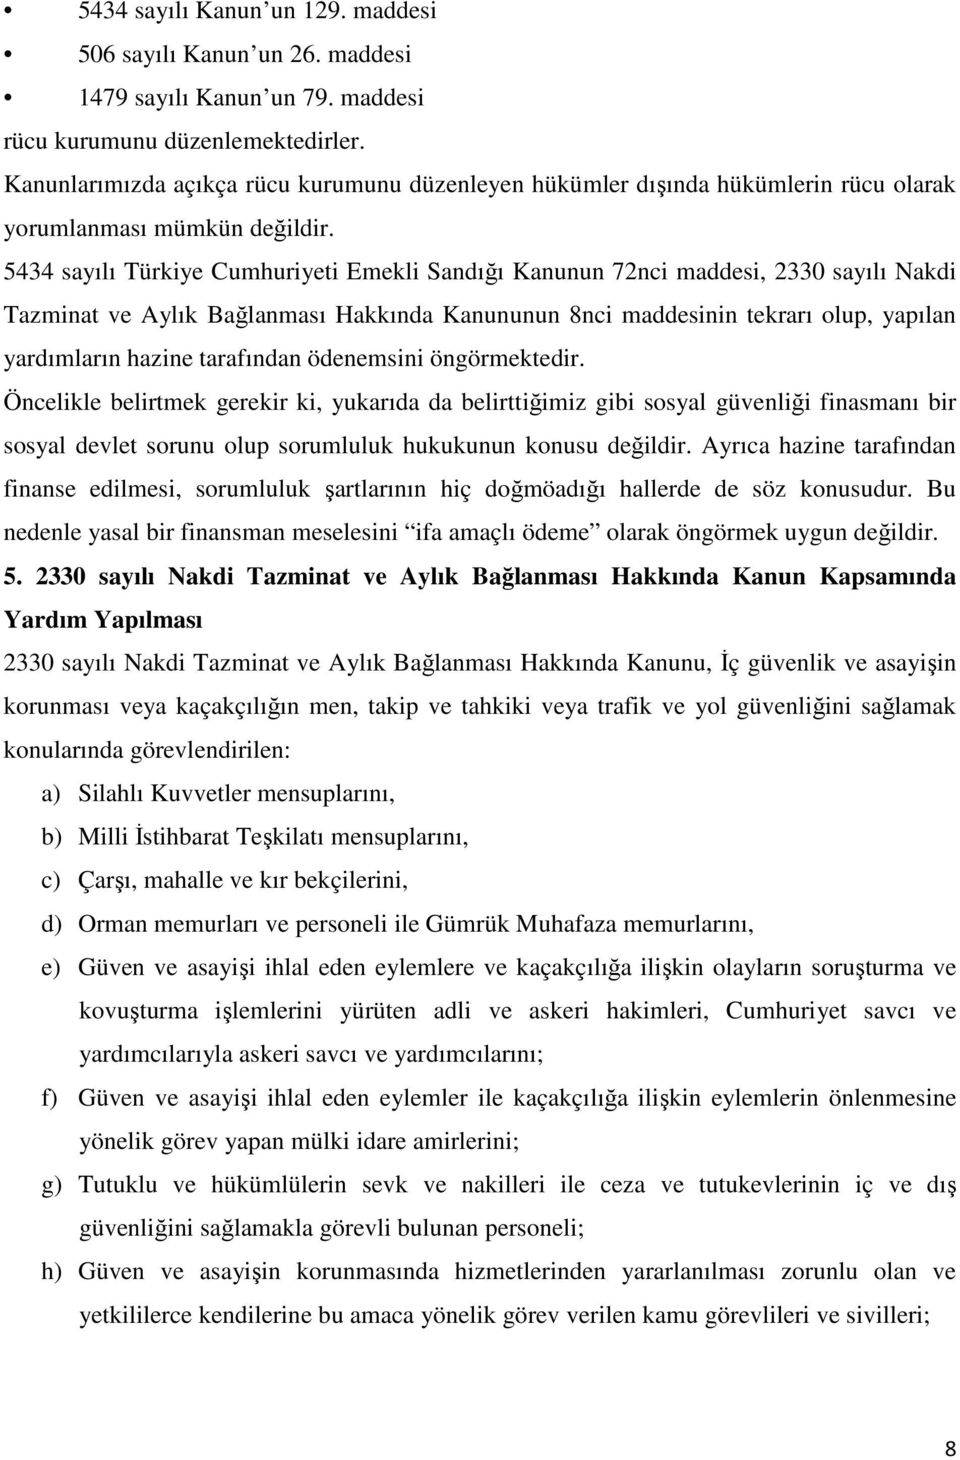 5434 sayılı Türkiye Cumhuriyeti Emekli Sandığı Kanunun 72nci maddesi, 2330 sayılı Nakdi Tazminat ve Aylık Bağlanması Hakkında Kanununun 8nci maddesinin tekrarı olup, yapılan yardımların hazine